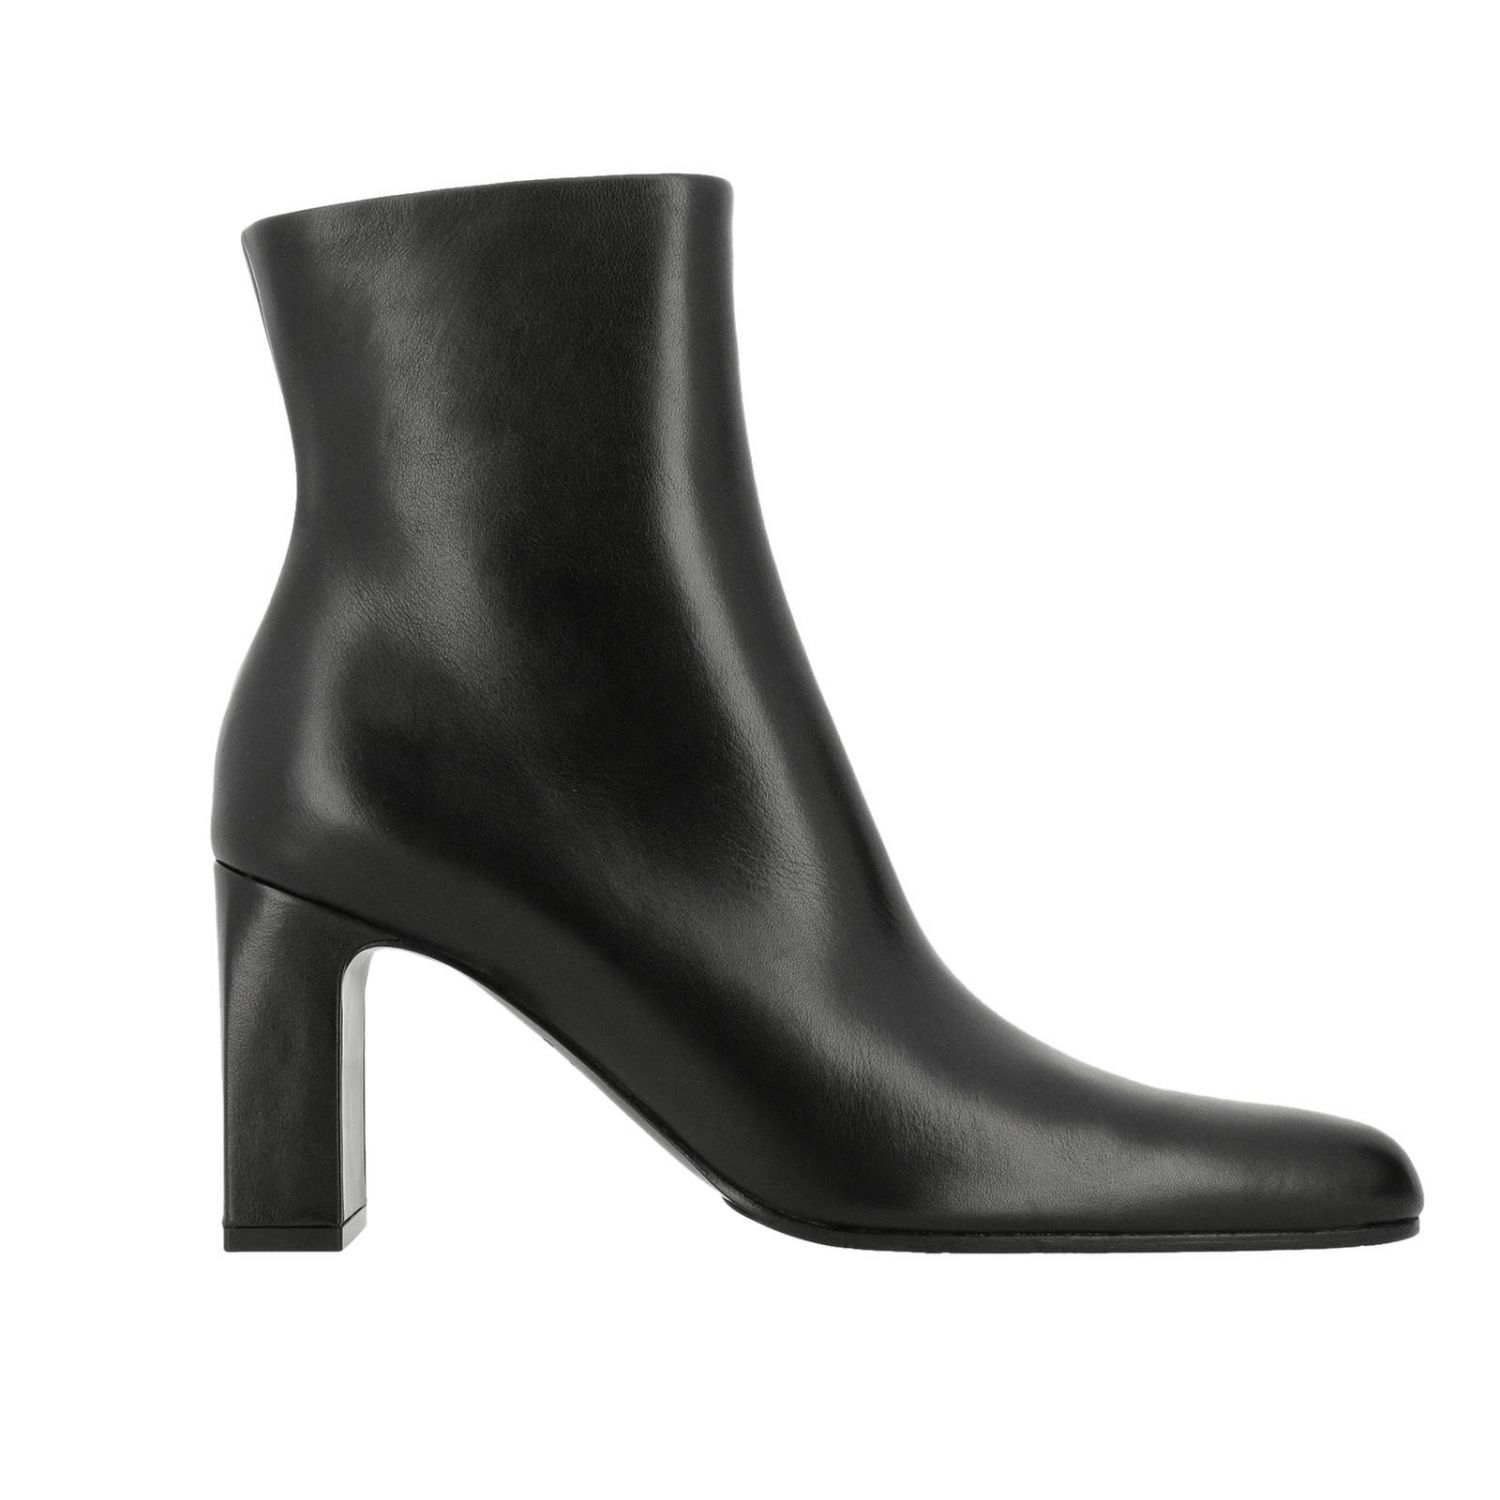 BALENCIAGA: Shoes women | Heeled Ankle Boots Balenciaga Women Black ...